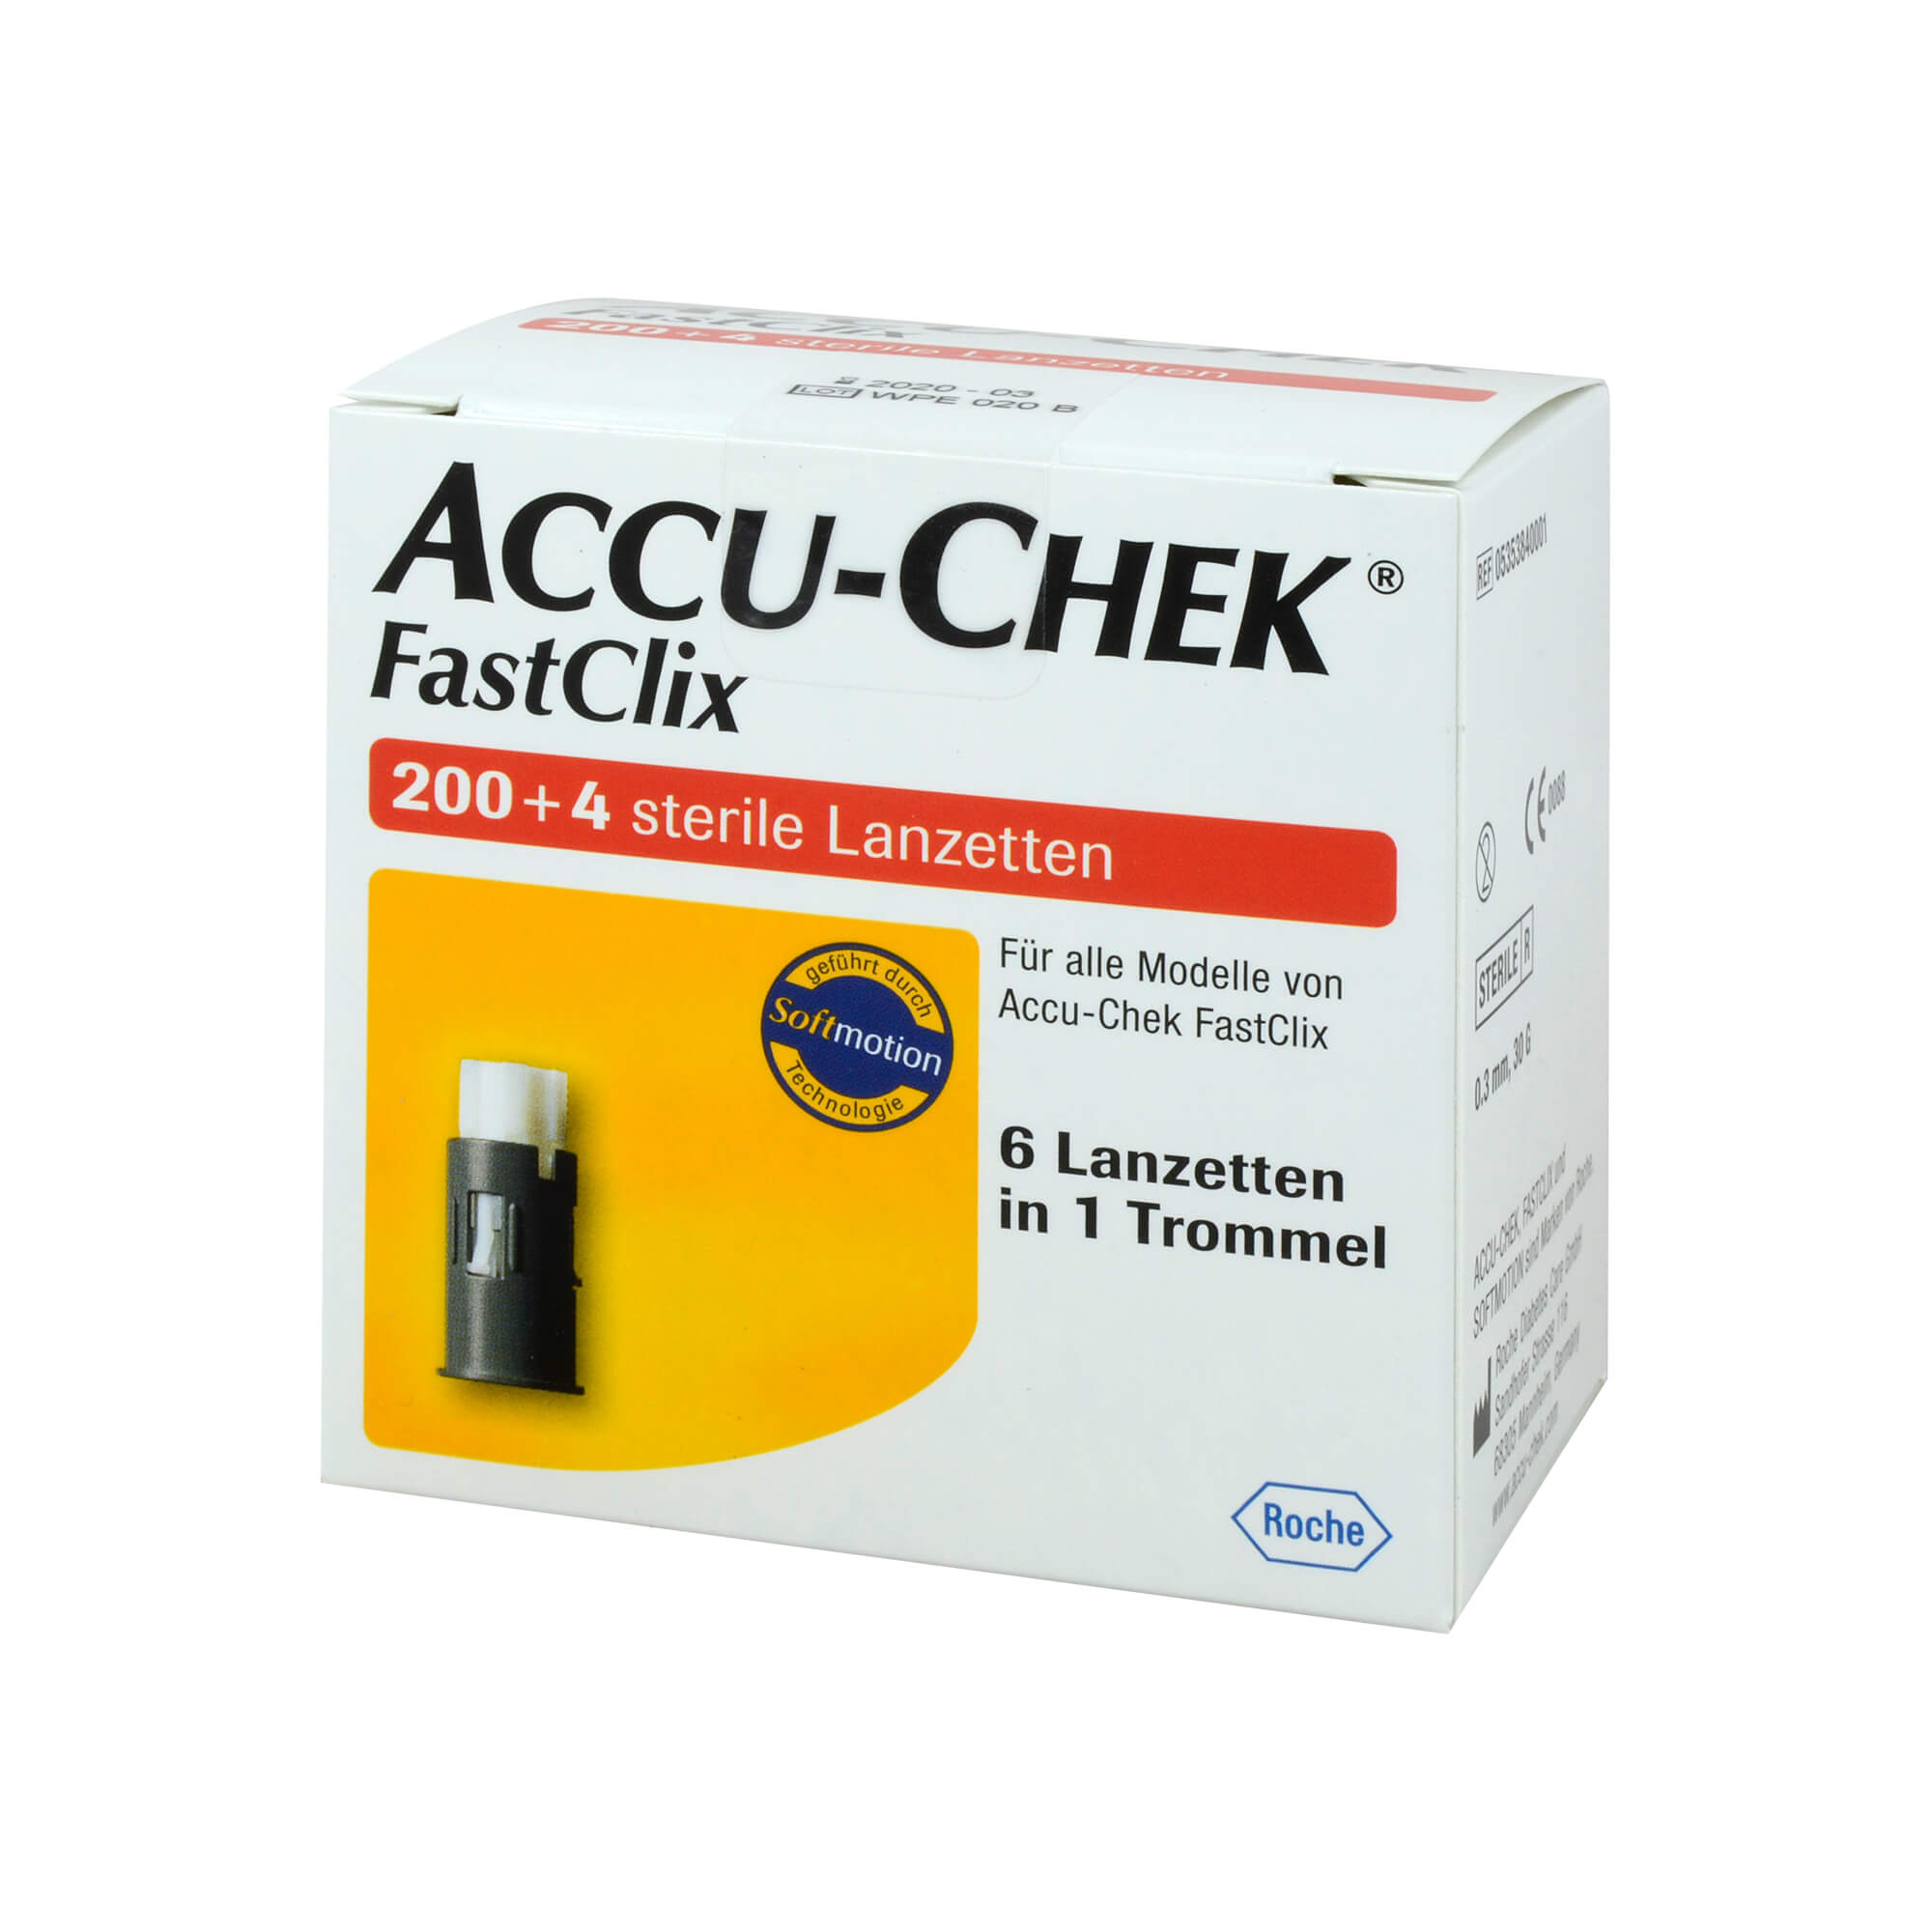 Für alle Modelle von Accu-Chek FastClix